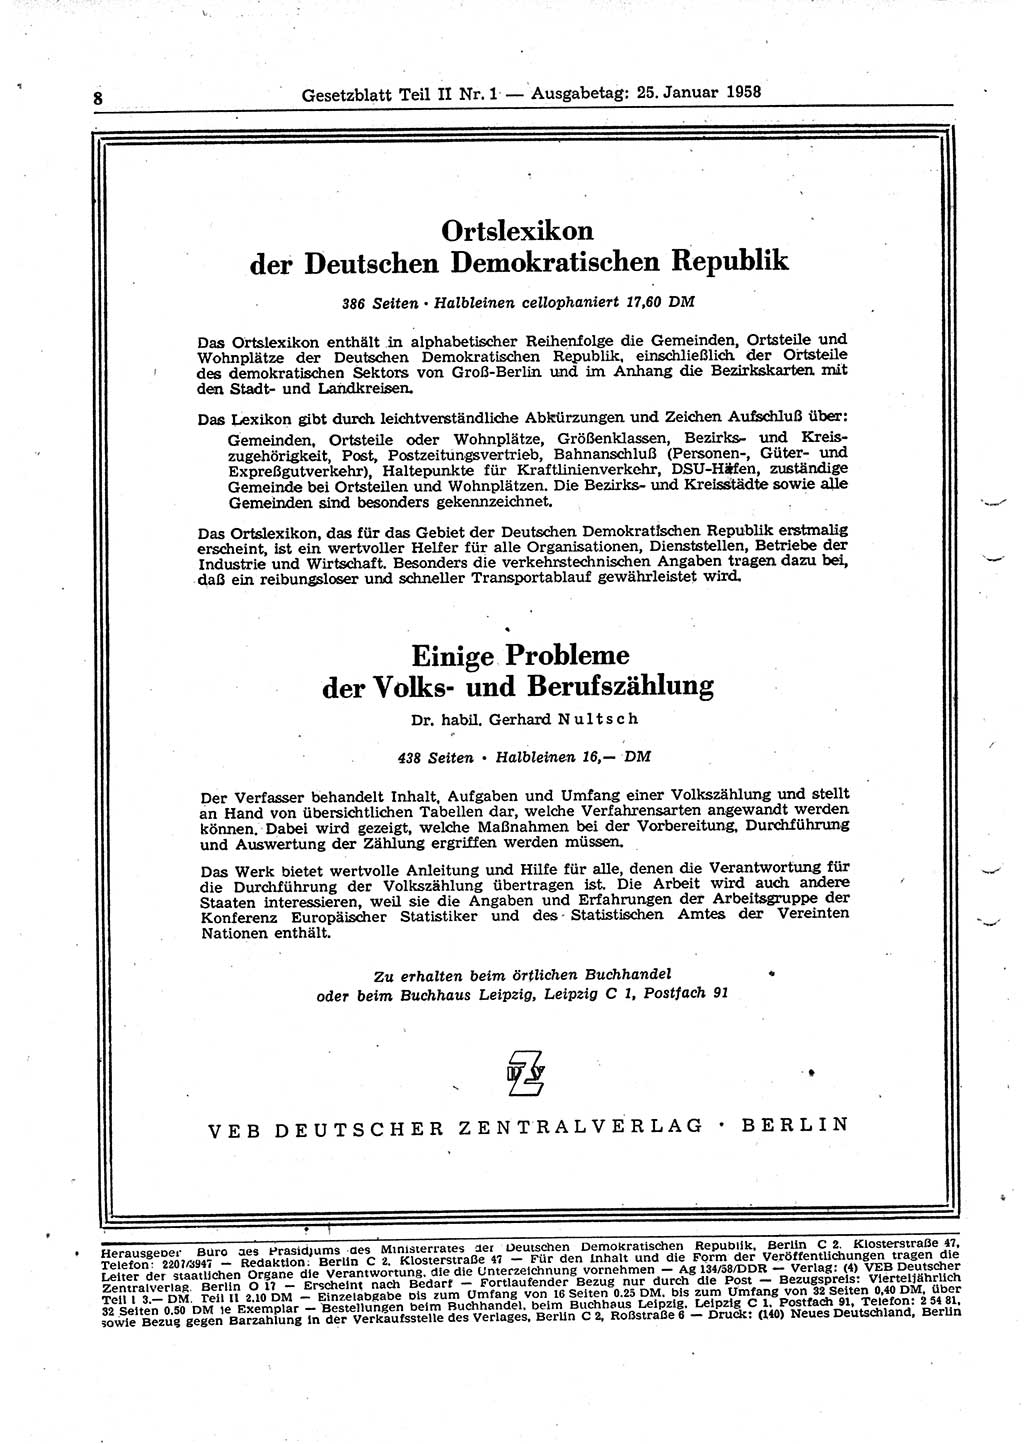 Gesetzblatt (GBl.) der Deutschen Demokratischen Republik (DDR) Teil ⅠⅠ 1958, Seite 8 (GBl. DDR ⅠⅠ 1958, S. 8)